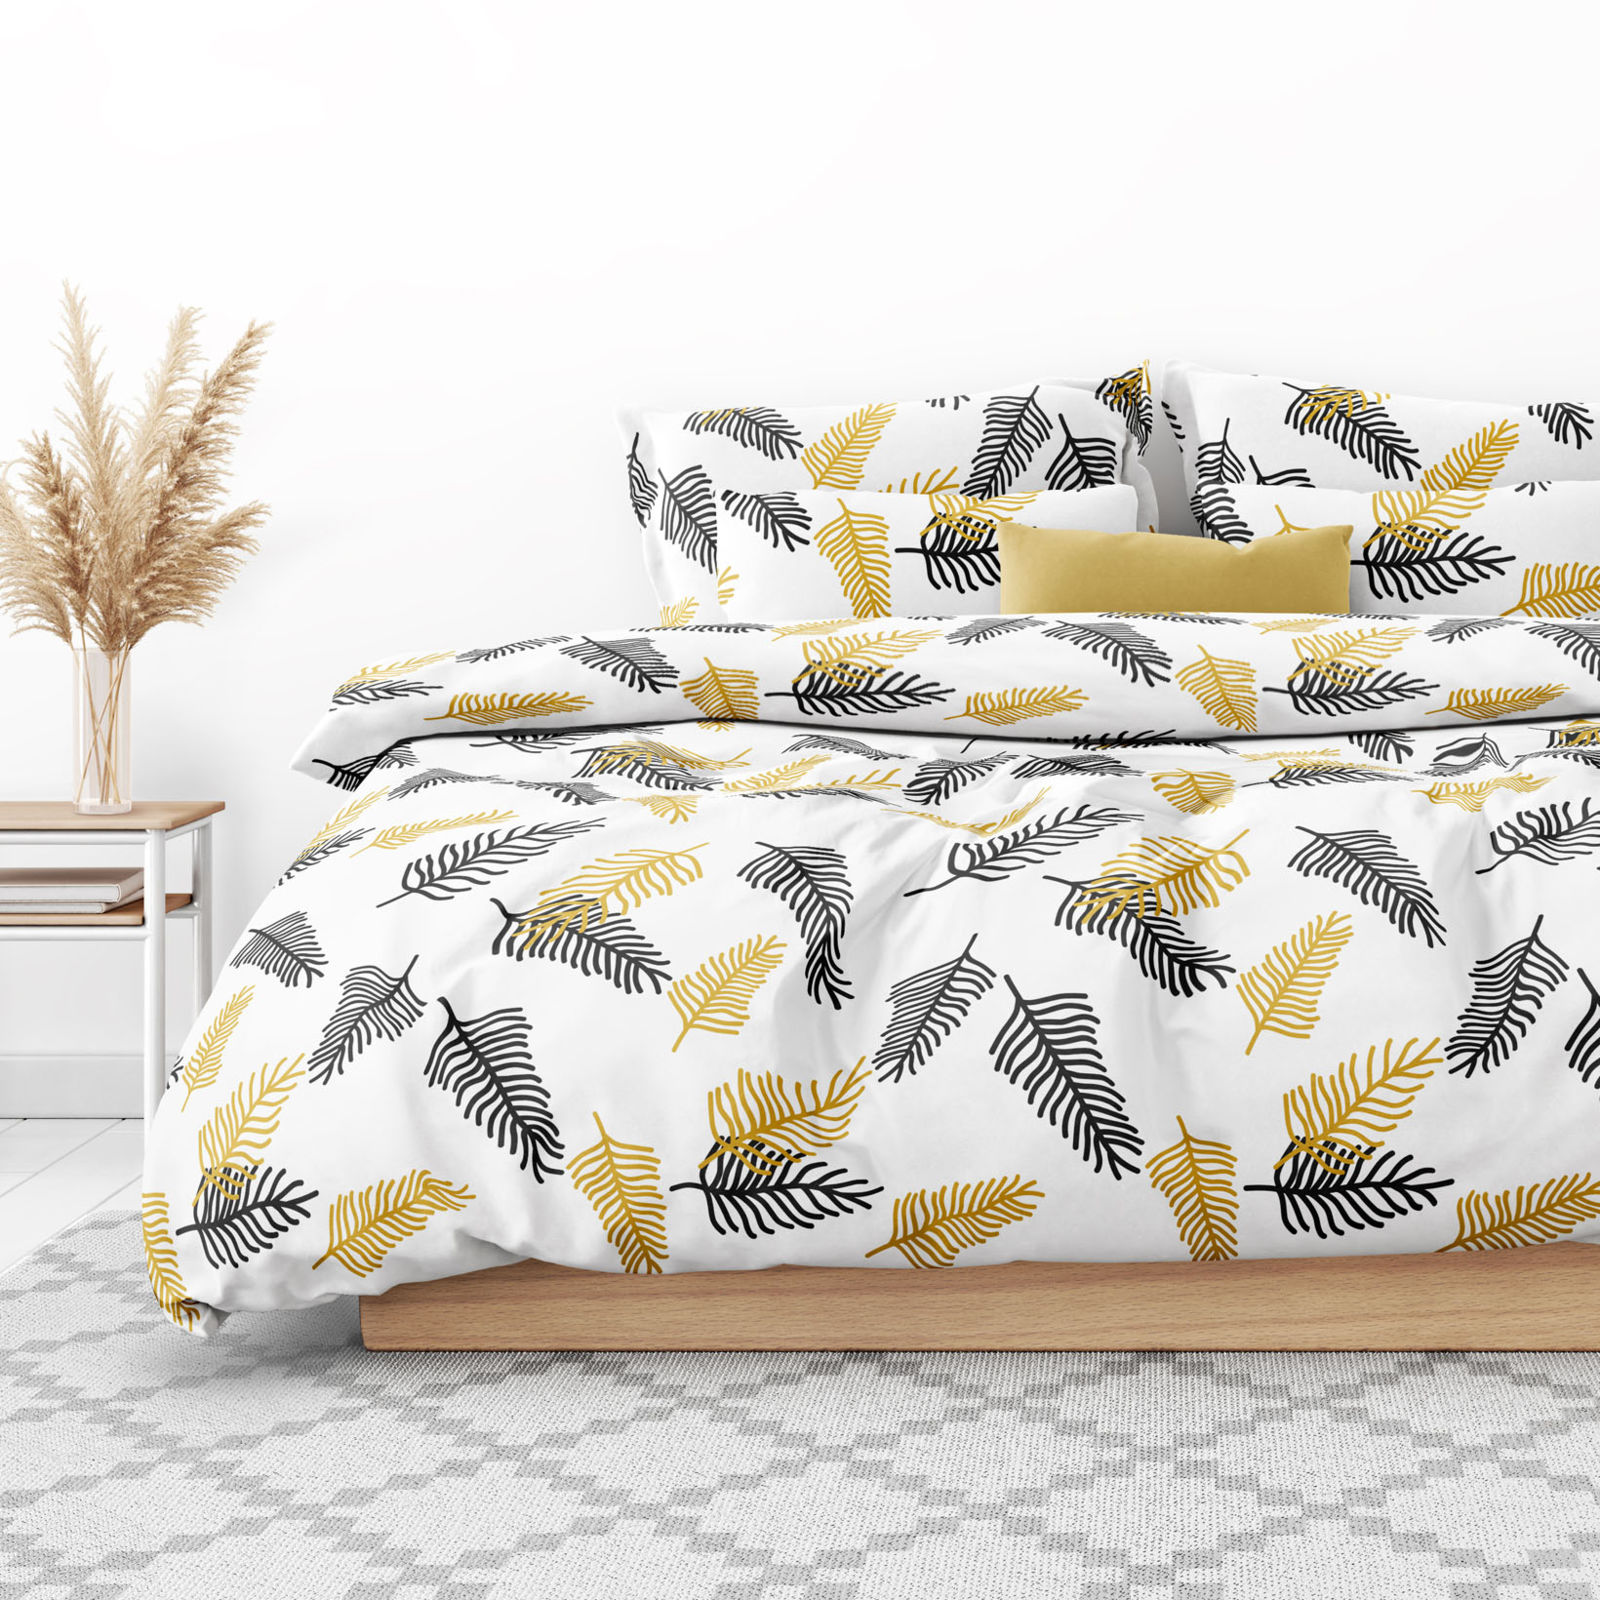 Lenjerie de pat de lux din bumbac satinat - frunze de palmier negre și aurii